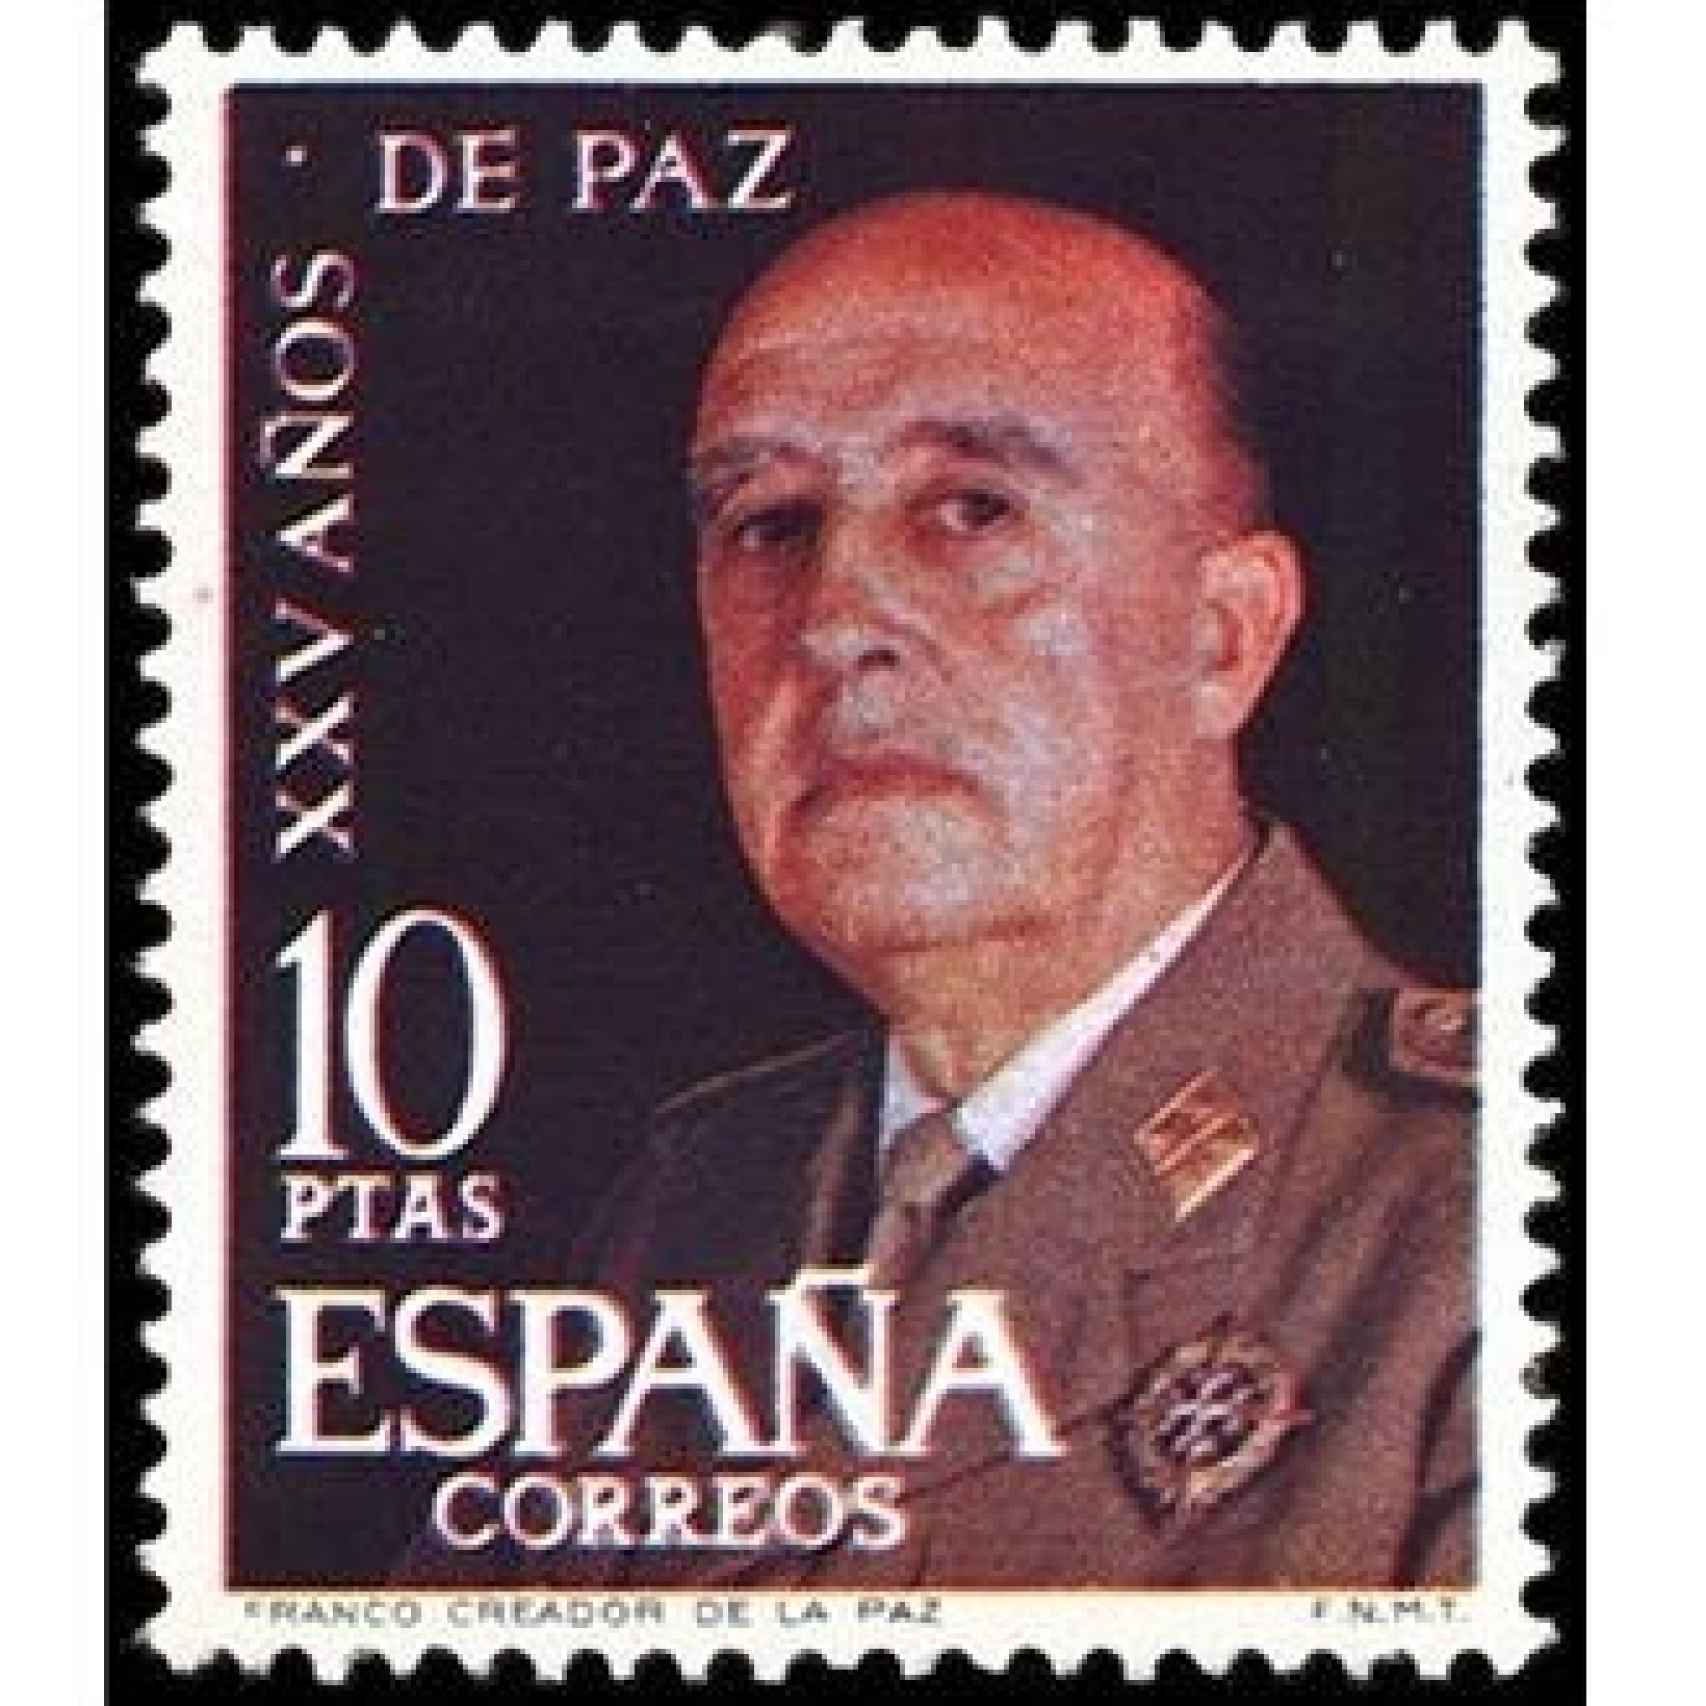 Sello conmemorativo de los 25 años de paz, dictados por Franco.